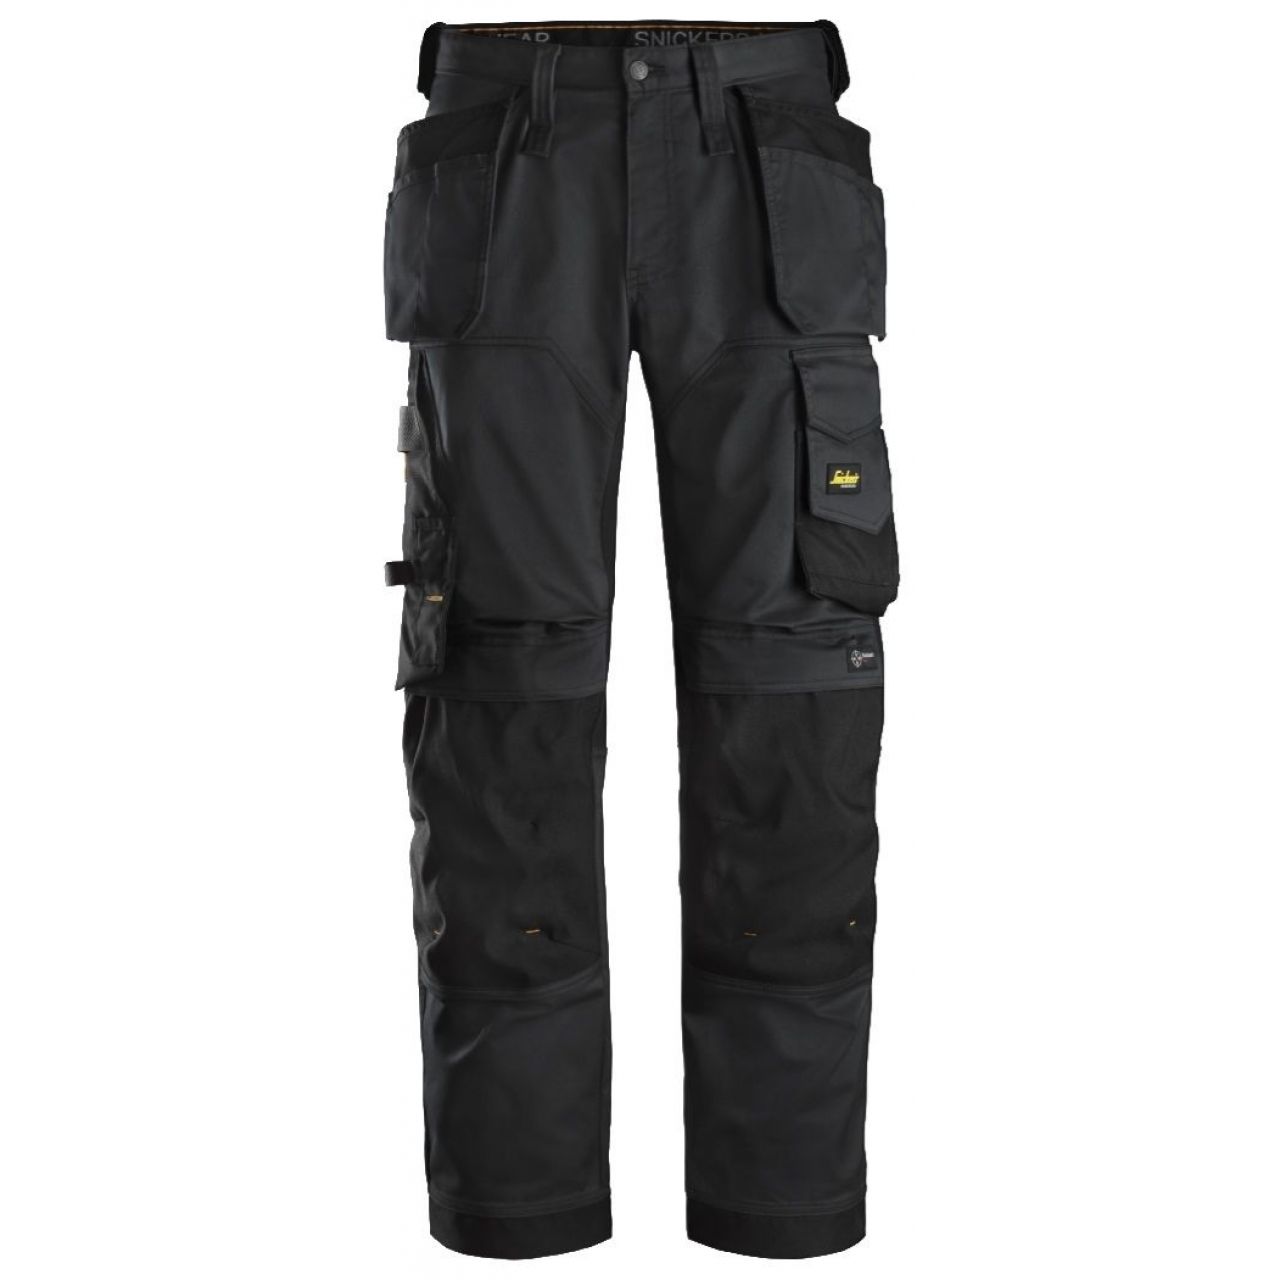 Pantalon elastico ajuste holgado AllroundWork bolsillos flotantes negro talla 108